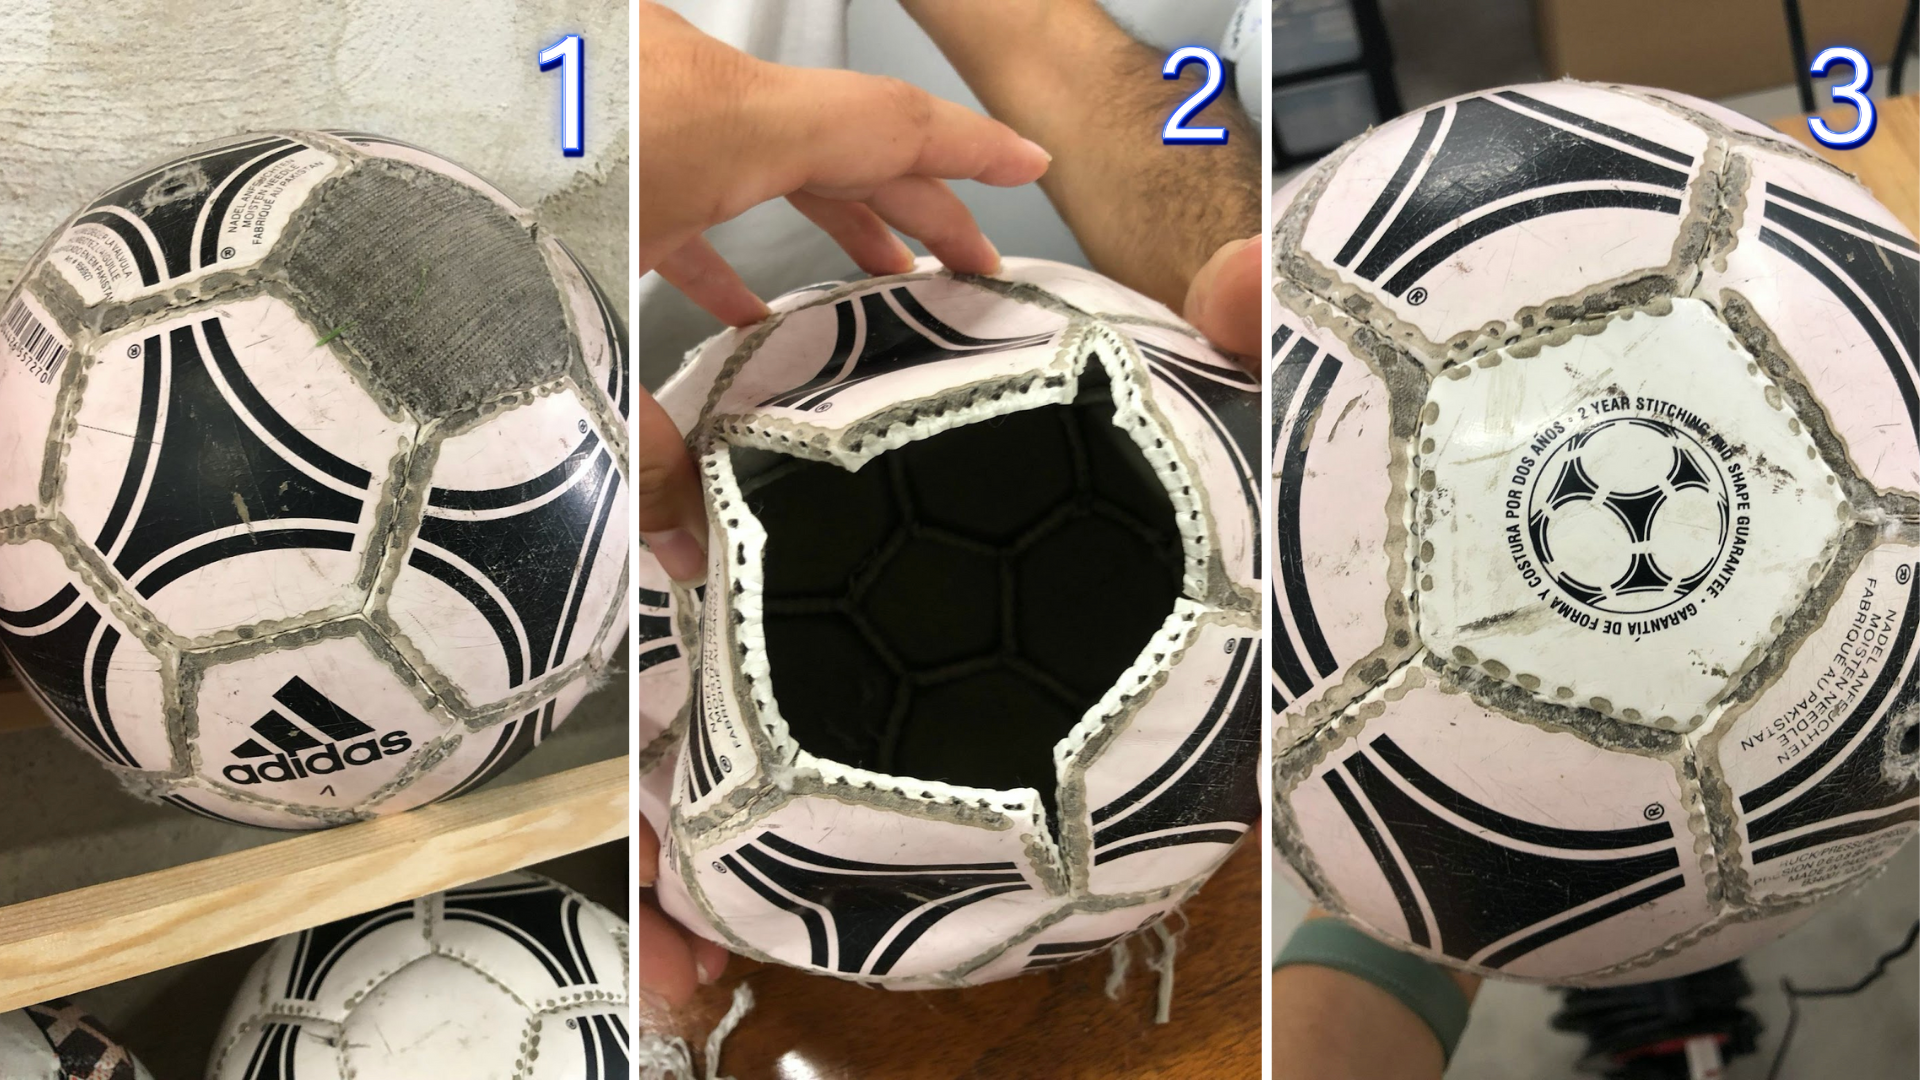 Résolu] Comment réparer une petite crevaison sur un ballon?